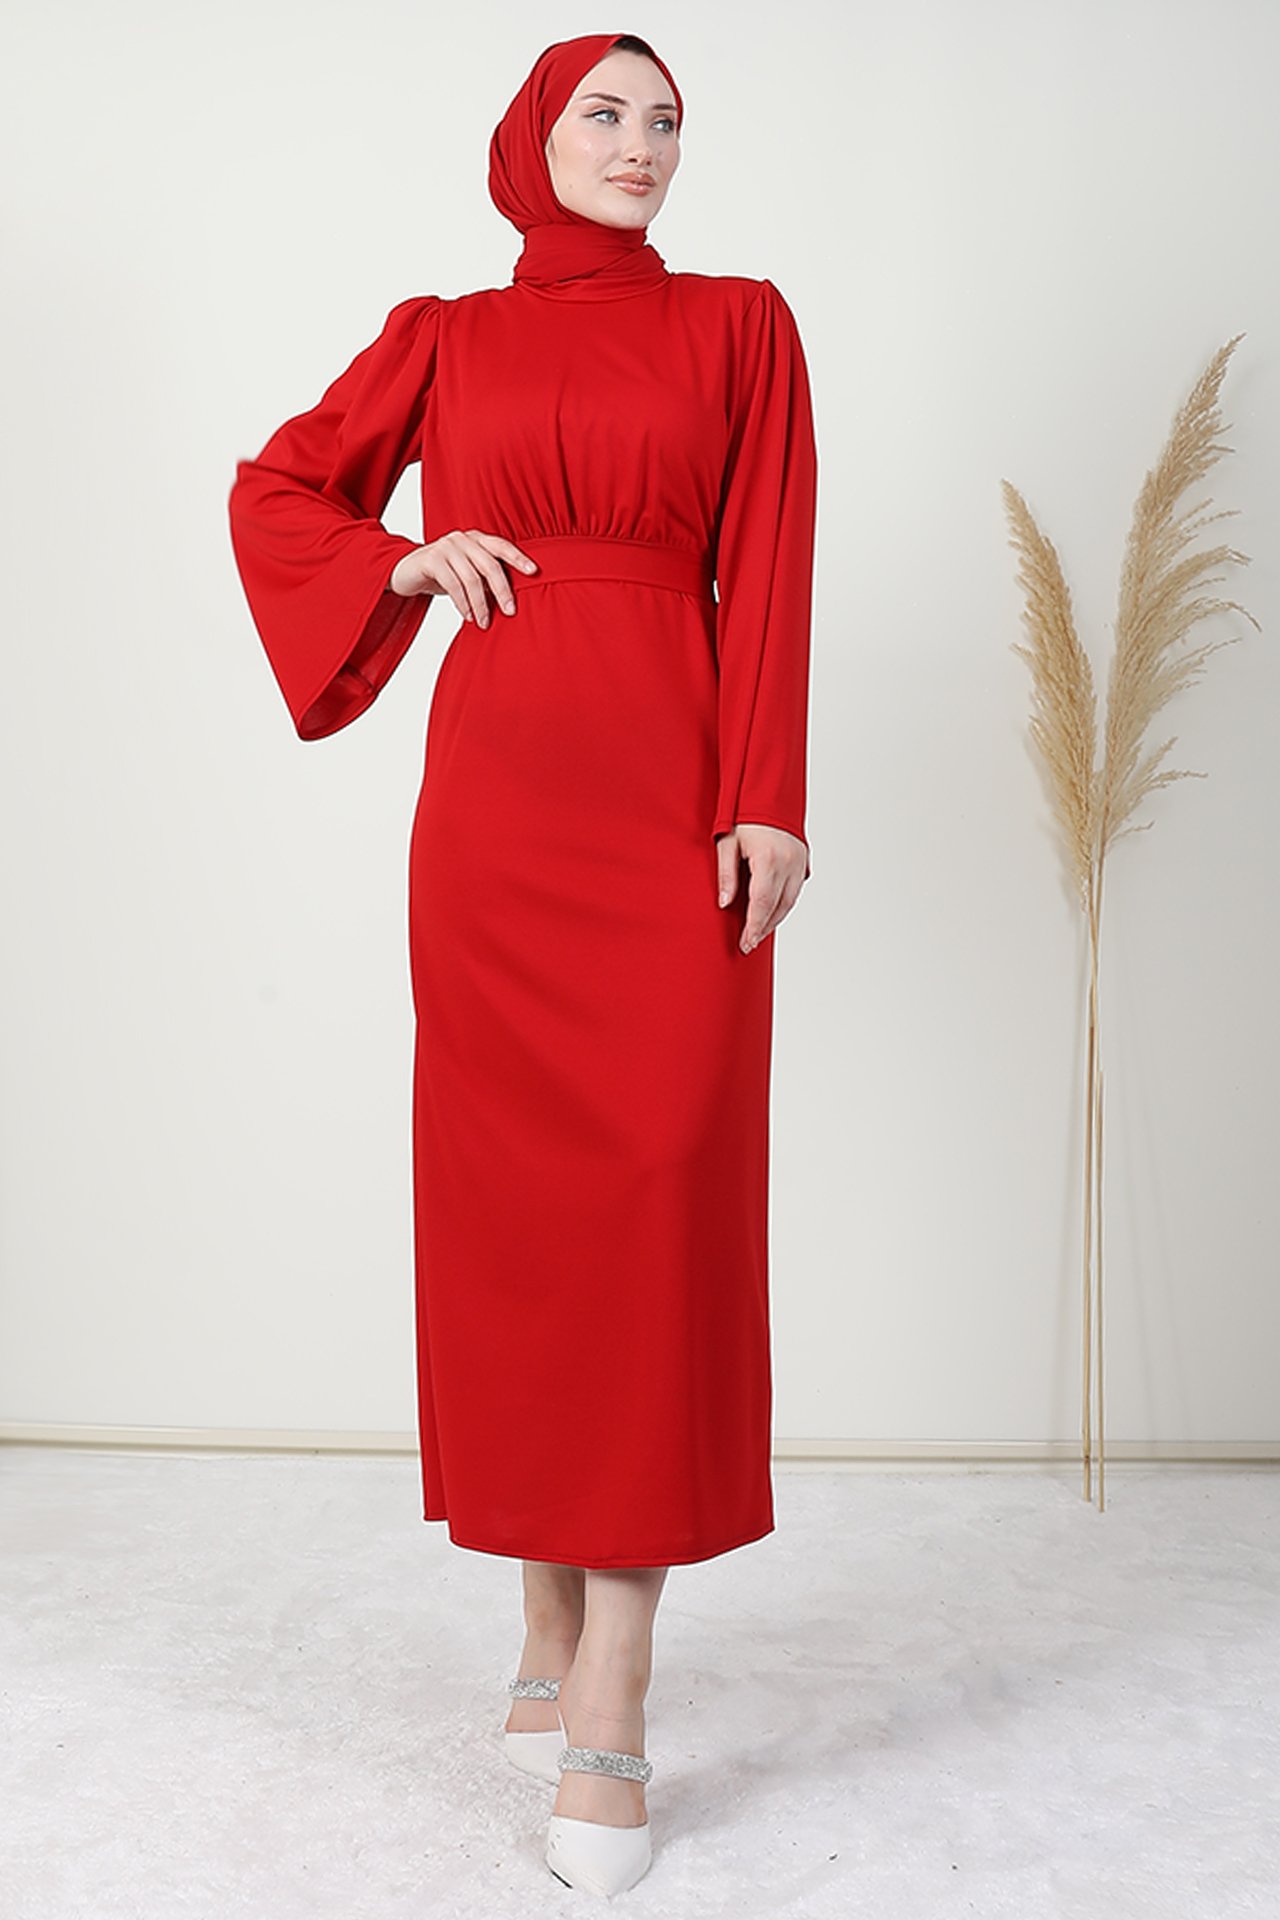 GİZAGİYİM - Göğsü Pelerinli Elbise Kırmızı